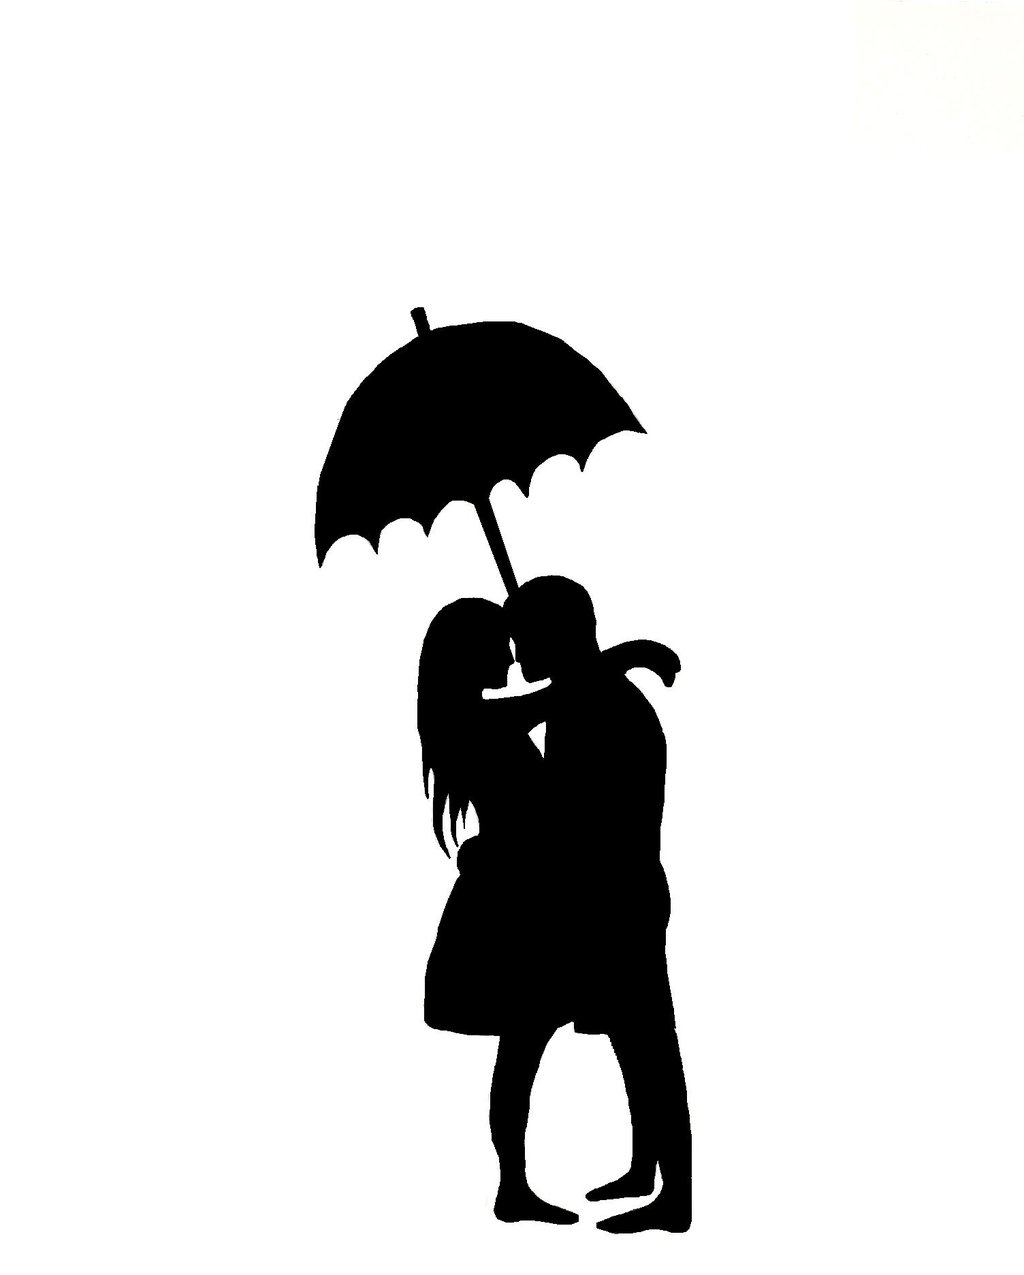 Man and Woman Under Umbrella Silhouette Stencil